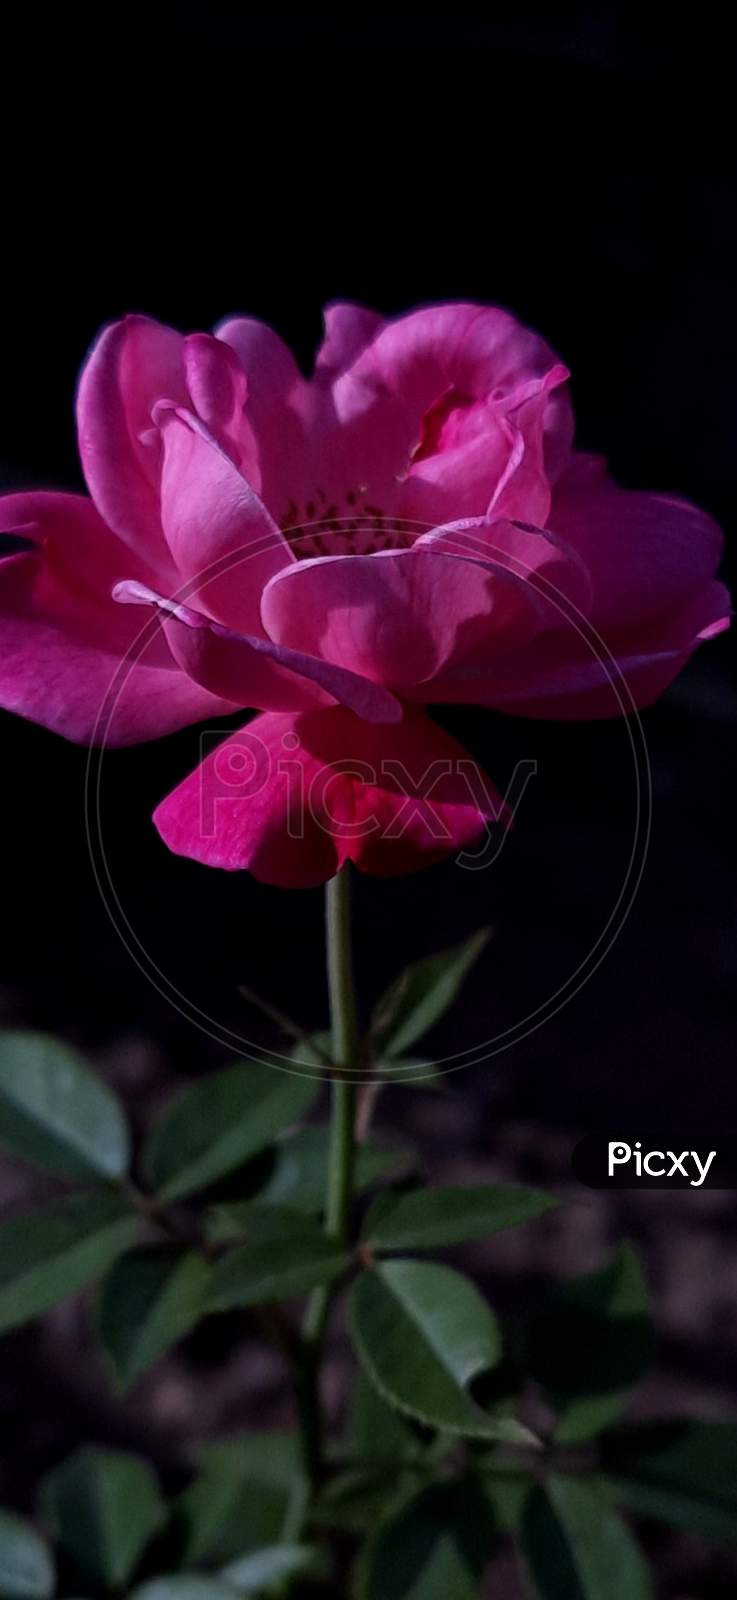 Flower, Pink rose